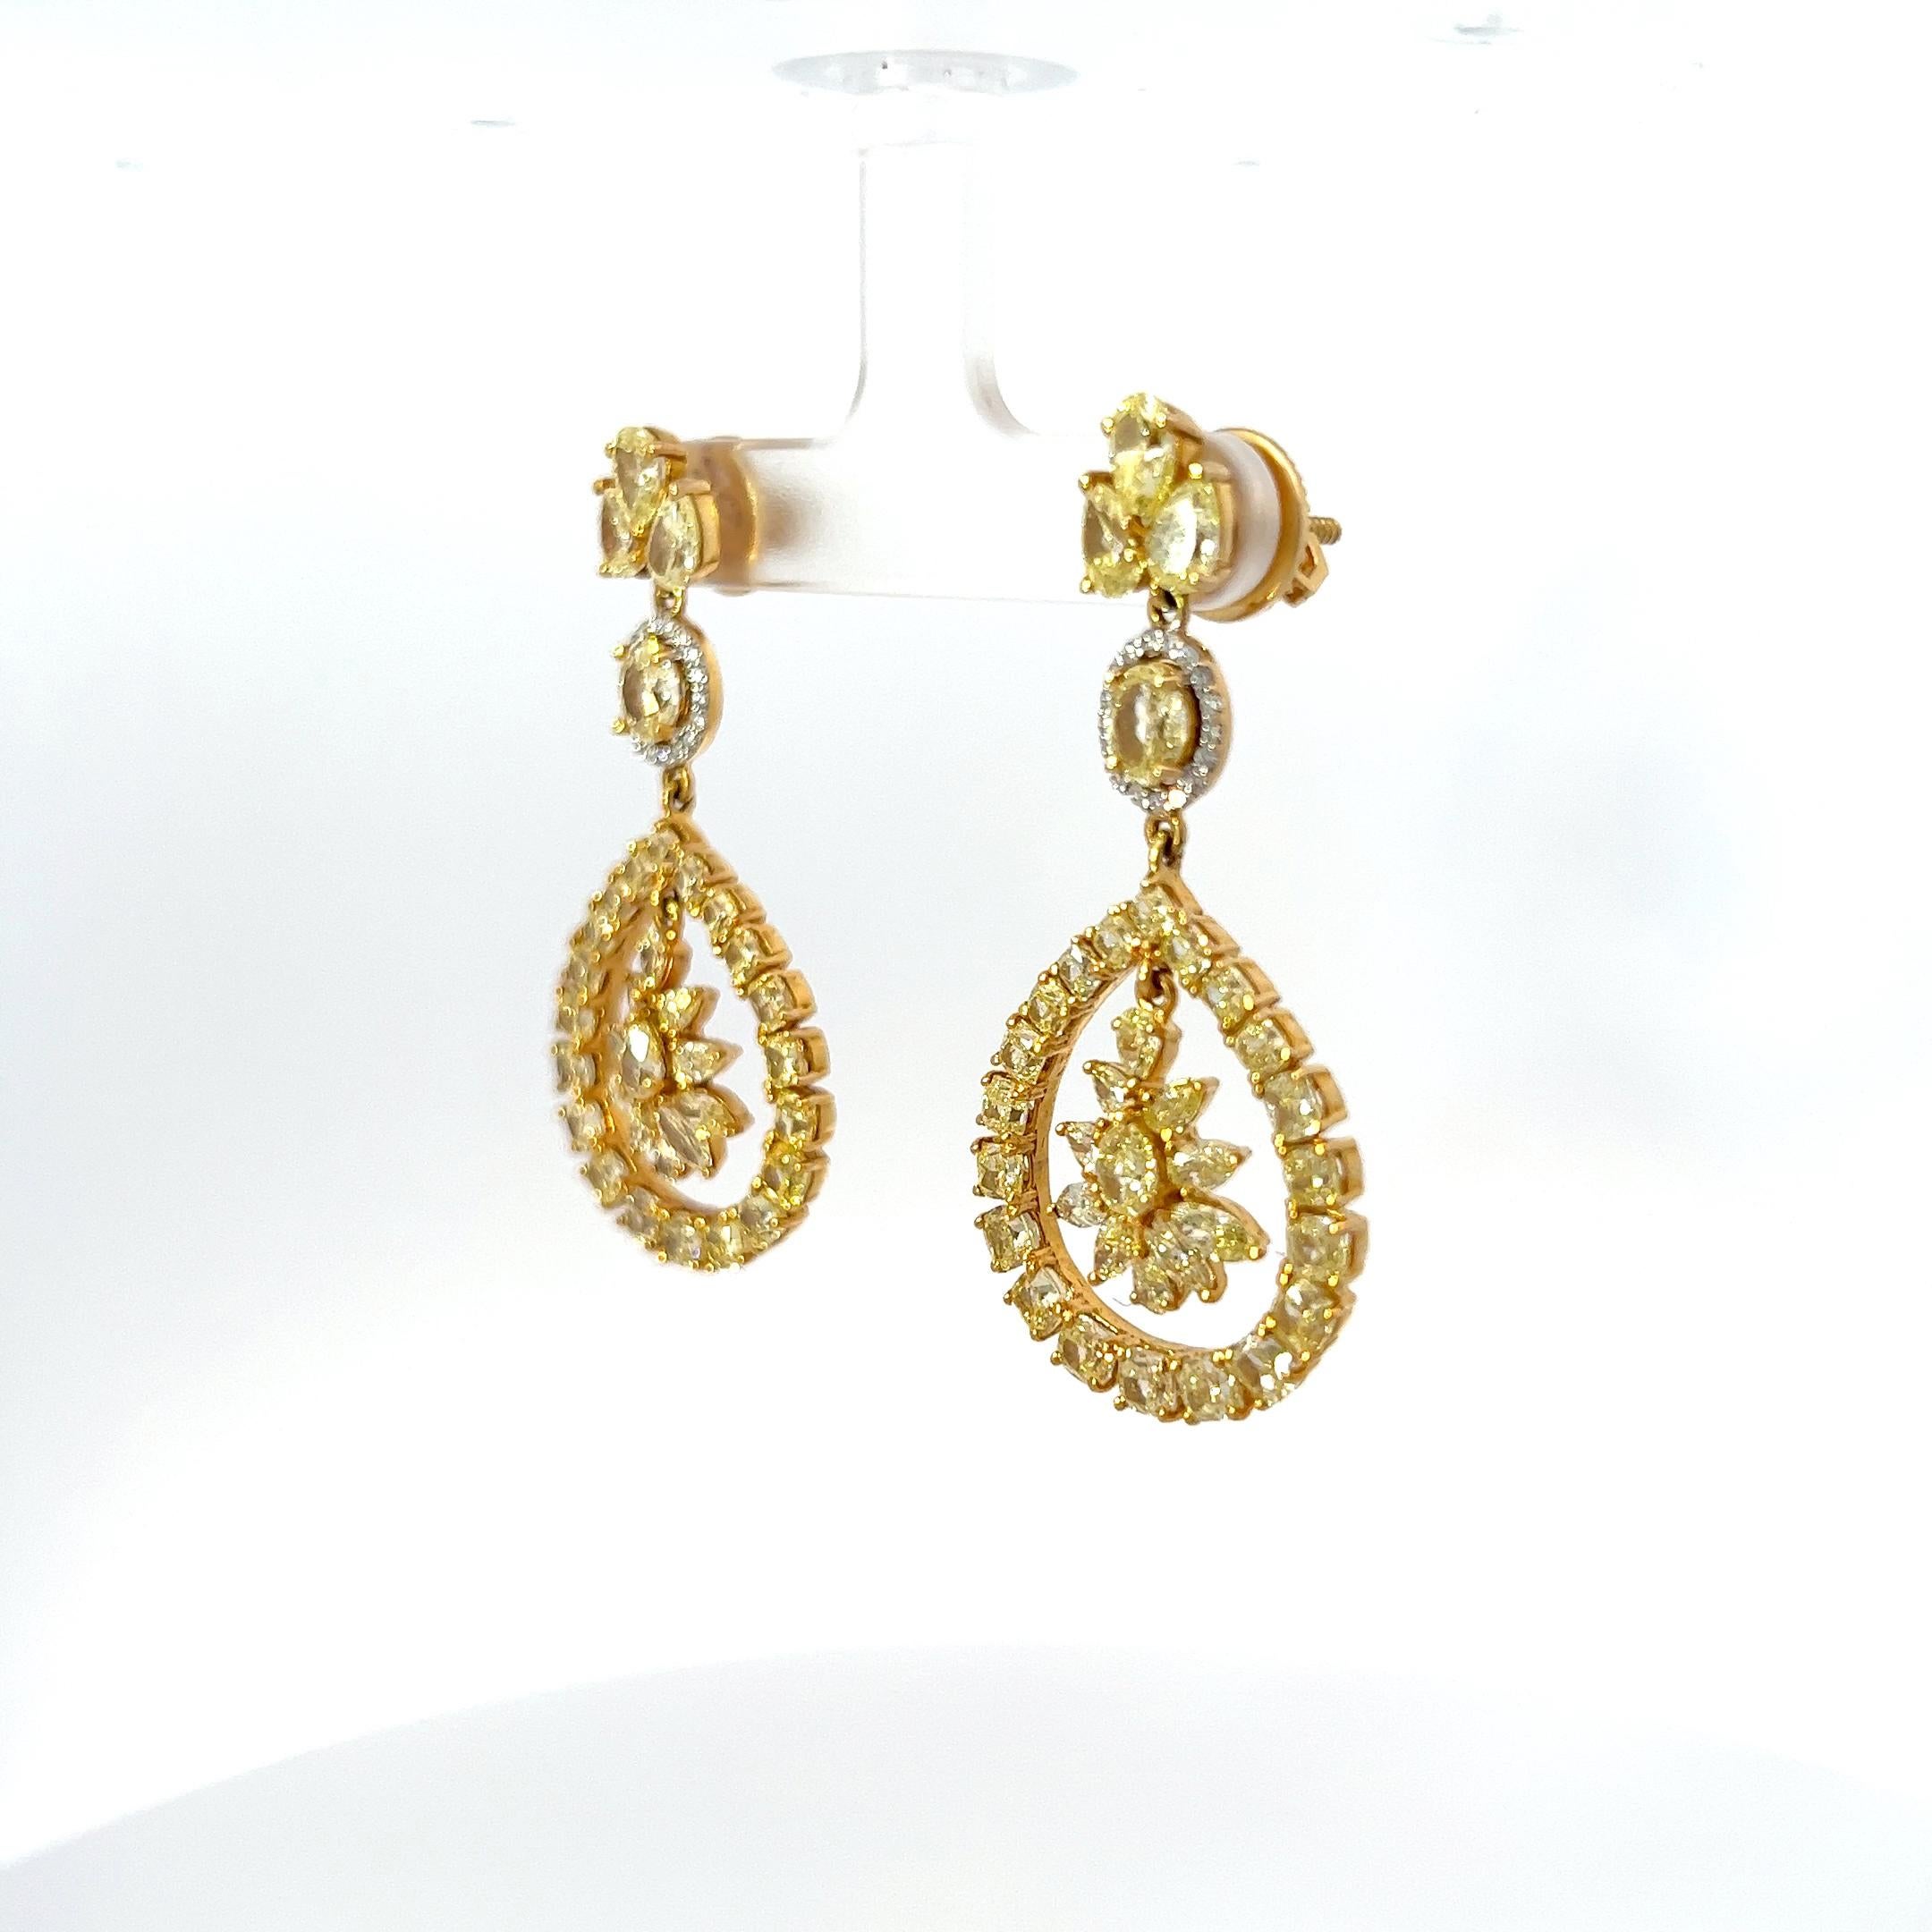 Modern 12.0 Carats of Fancy Yellow Diamond Earring